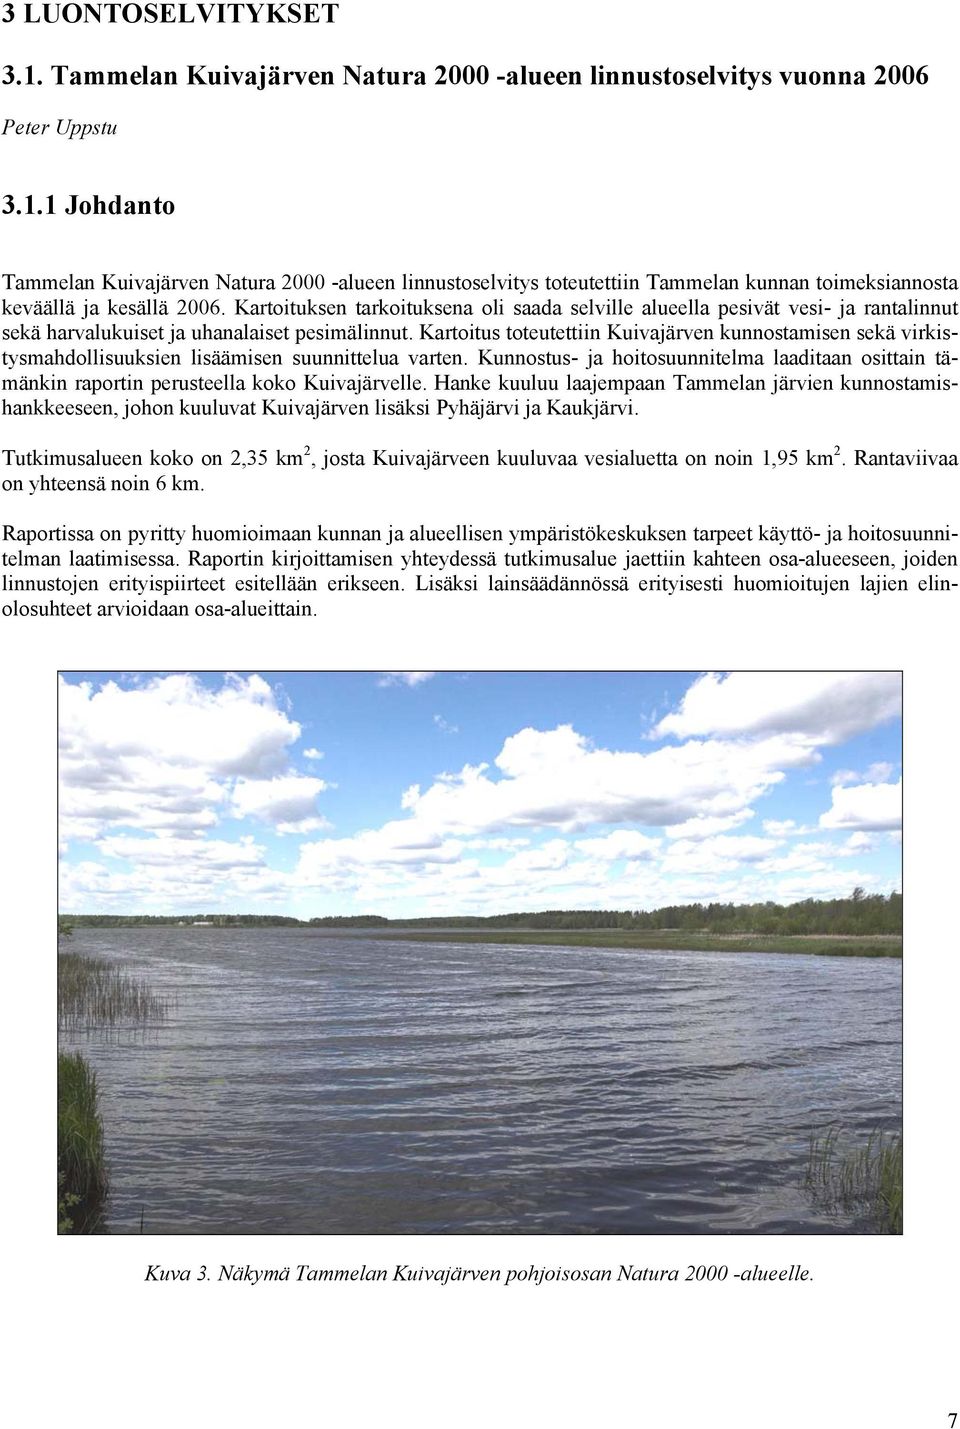 Kartoitus toteutettiin Kuivajärven kunnostamisen sekä virkistysmahdollisuuksien lisäämisen suunnittelua varten.